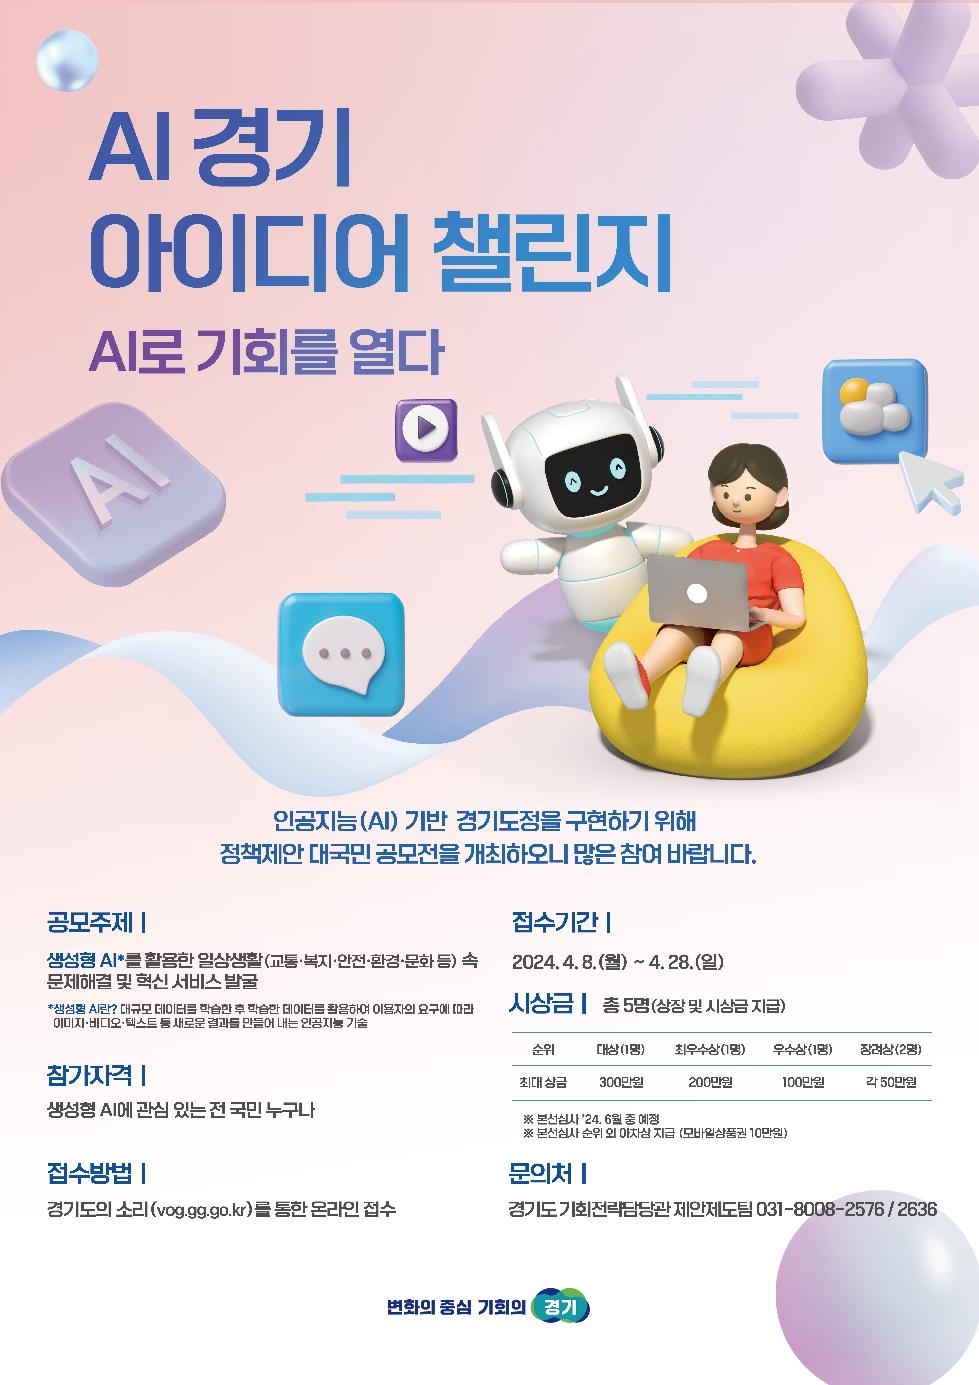 경기도, 28일까지 ‘AI 경기 아이디어 챌린지’ 개최